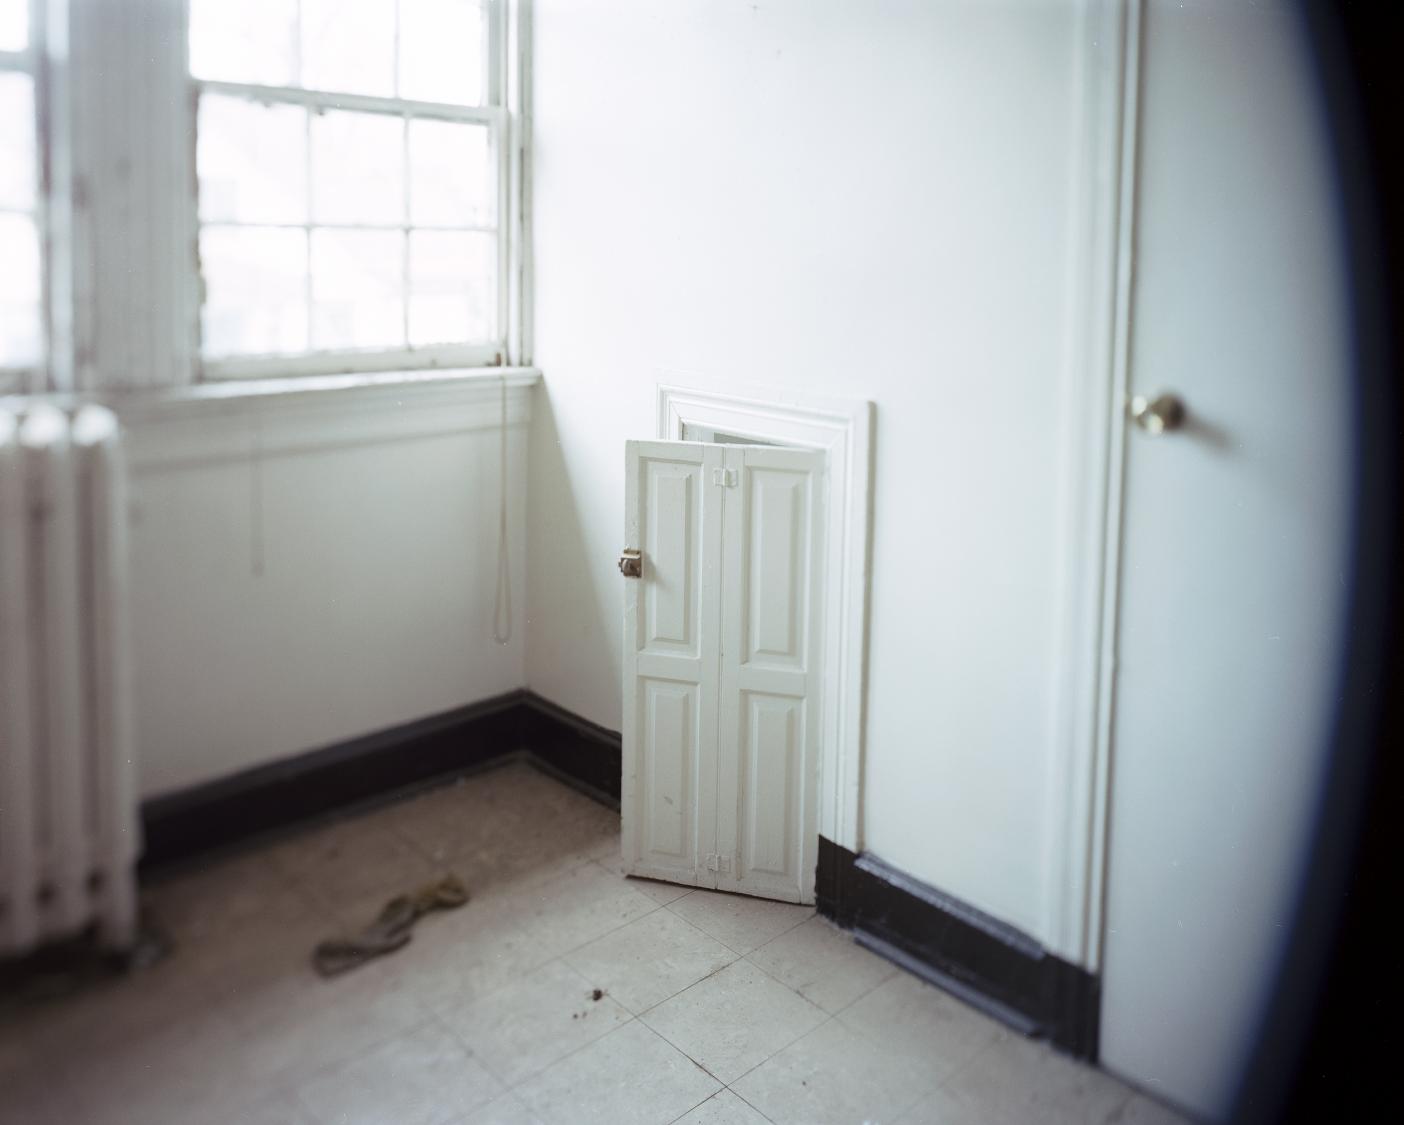 Childhood Door, Forest Glen MD